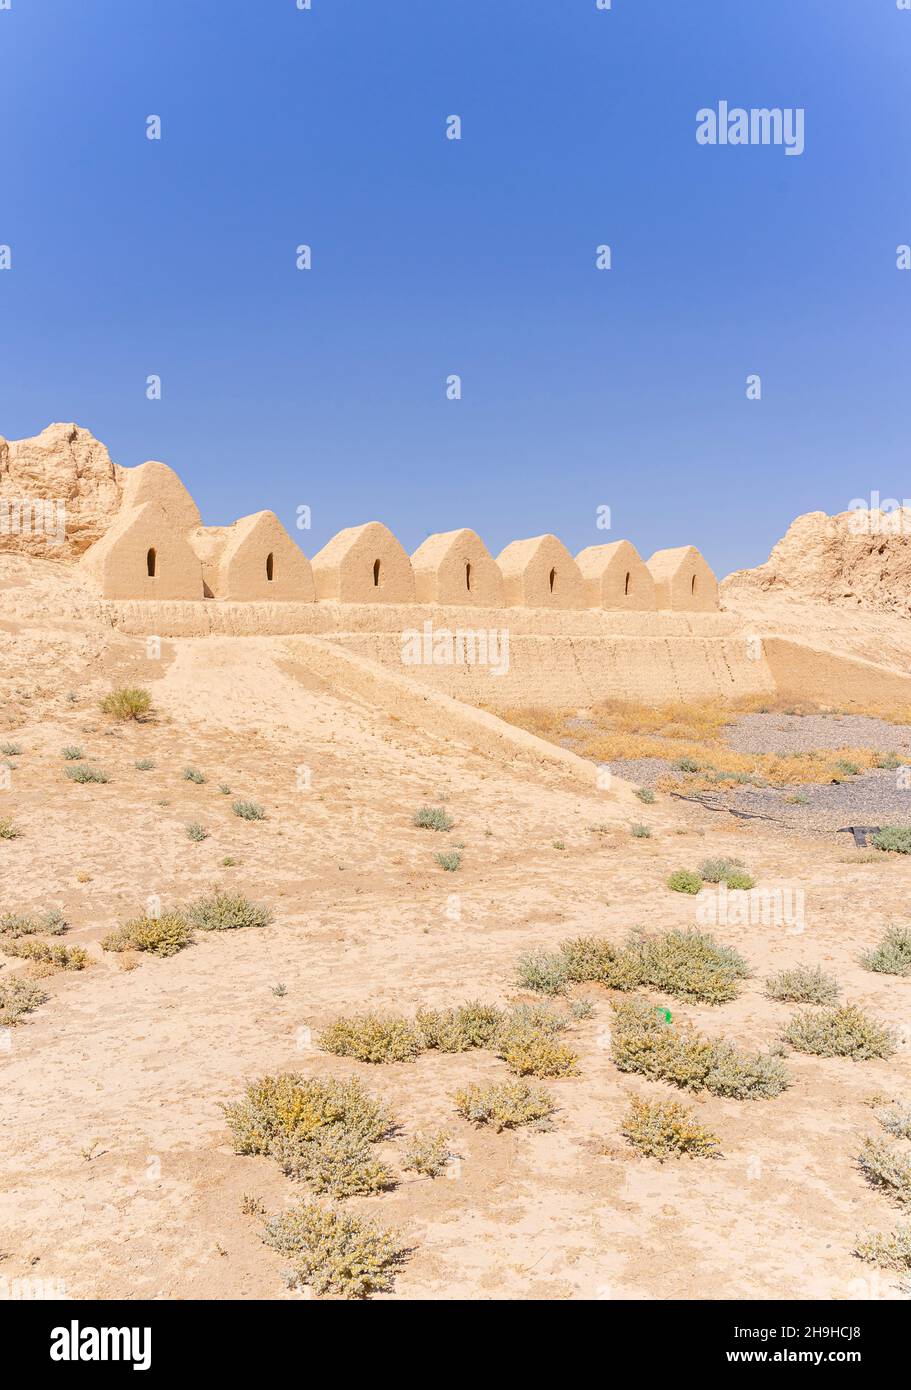 Merlature su muro, fortificazione di un'antica città di Sawran o Sauran, Via della Seta, fondata 6th cc, rovine del 12-16th secolo, Kazakistan Foto Stock